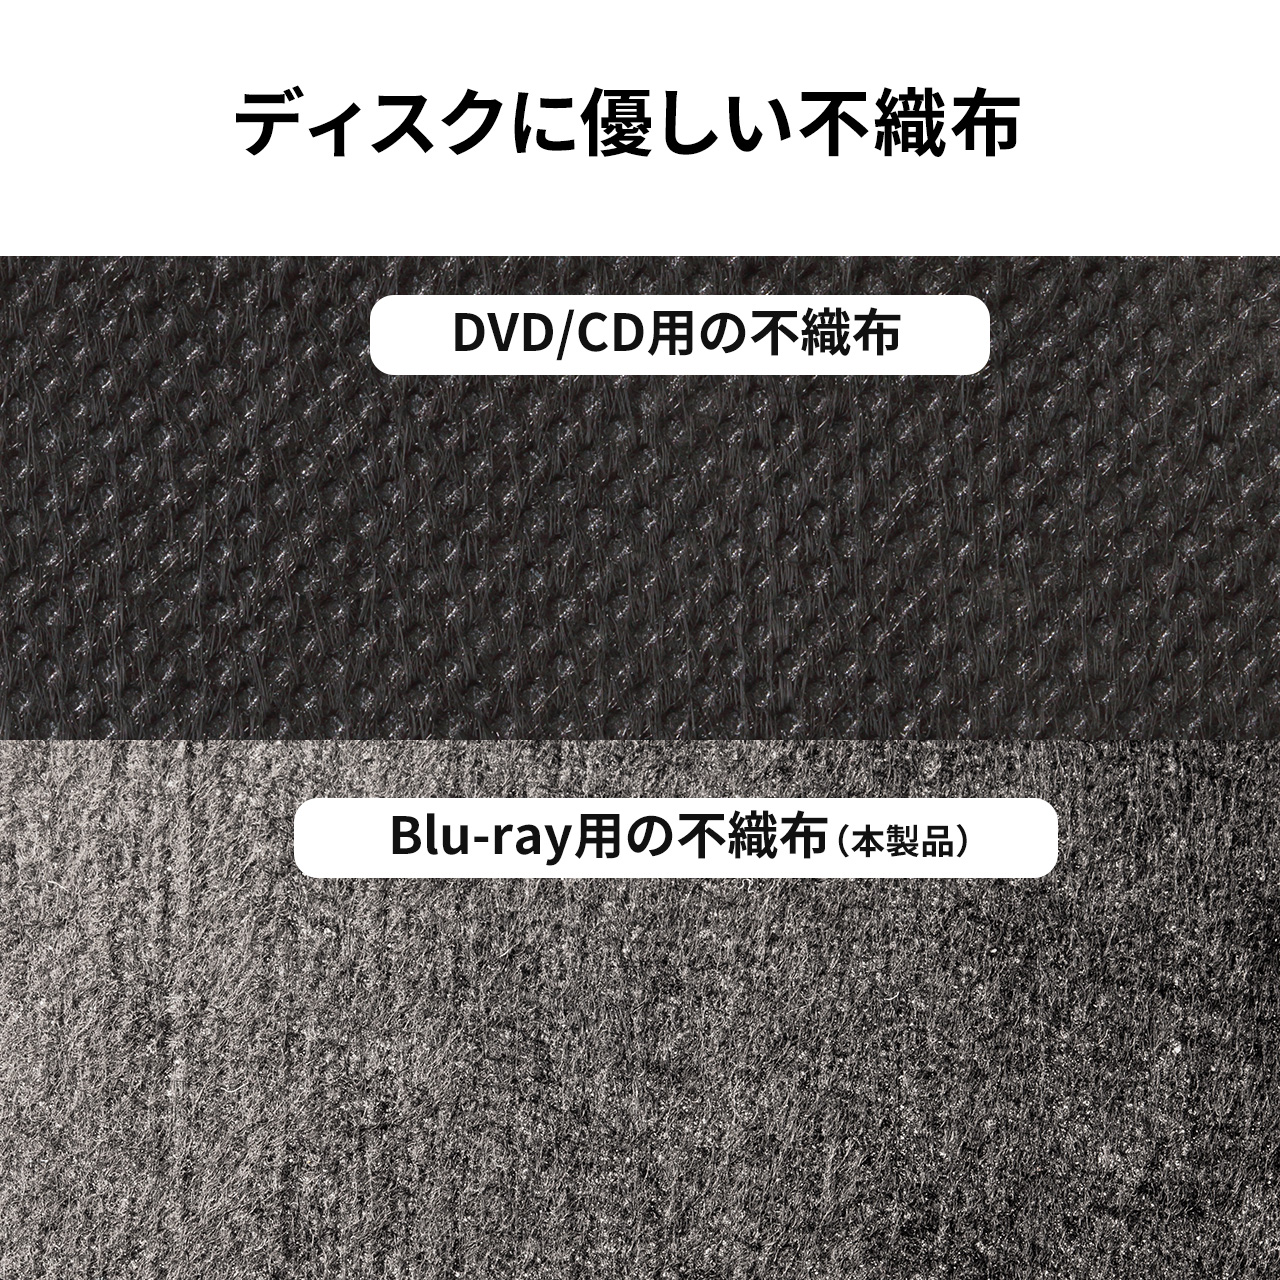 ブルーレイ/CD/DVDケース 大容量 120枚収納 CDジャケット収納対応 セミハード 取っ手付き ファスナータイプ ブラック 200-FCD071